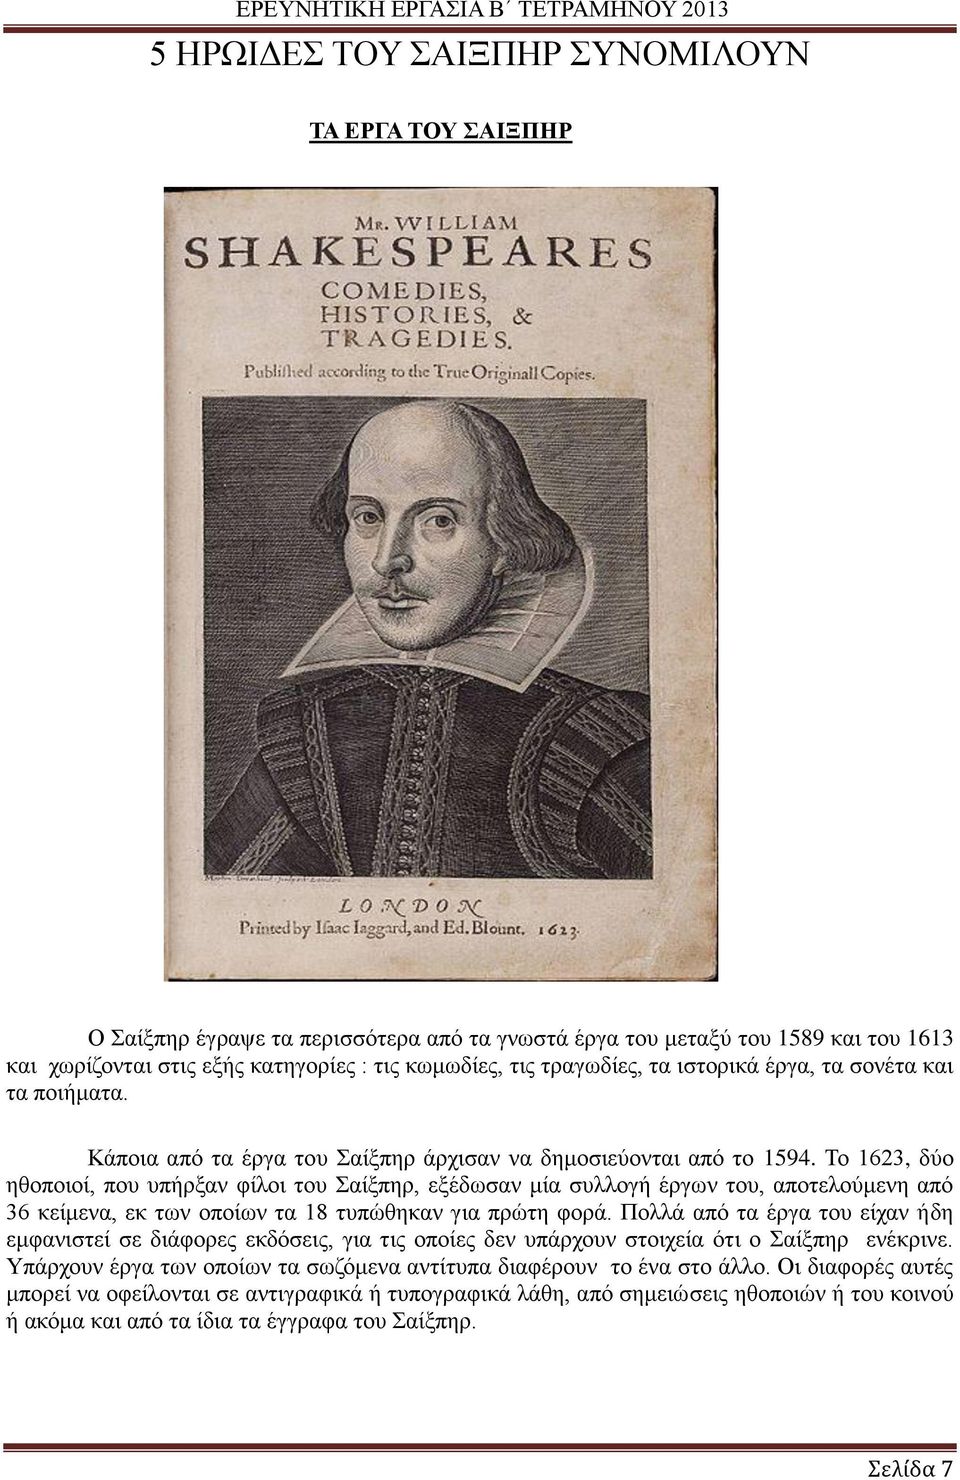 Το 1623, δύο ηθοποιοί, που υπήρξαν φίλοι του Σαίξπηρ, εξέδωσαν μία συλλογή έργων του, αποτελούμενη από 36 κείμενα, εκ των οποίων τα 18 τυπώθηκαν για πρώτη φορά.